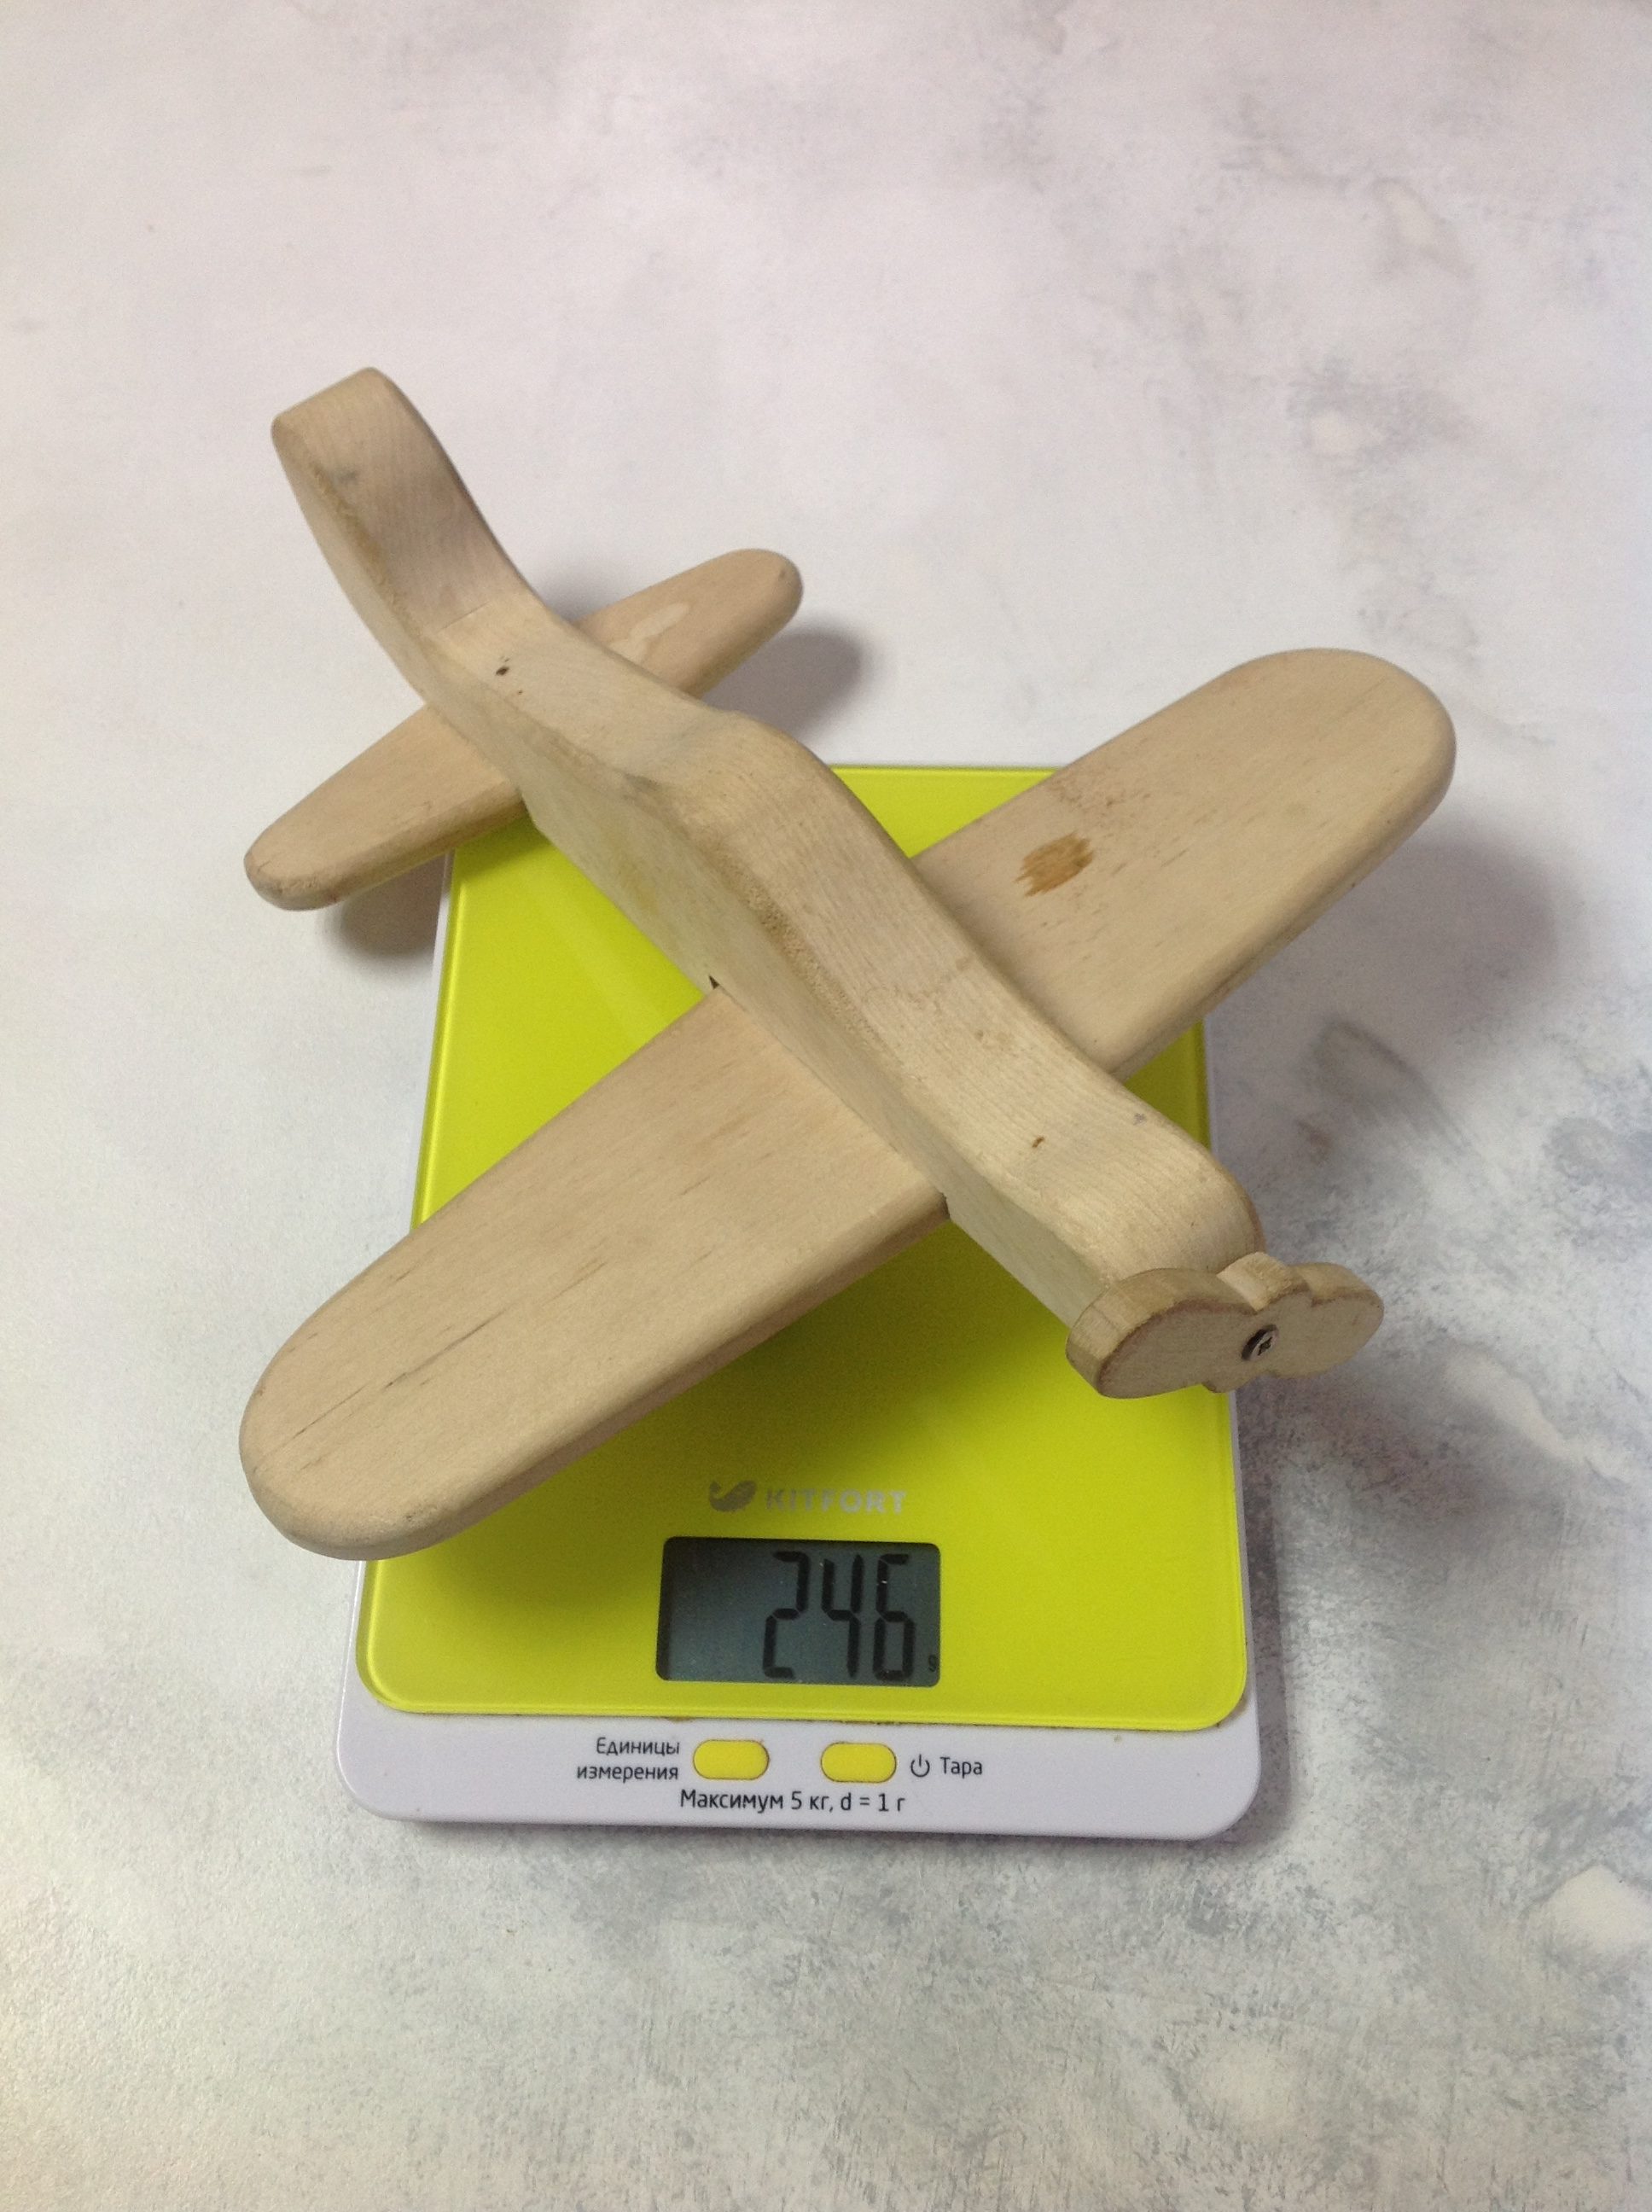 Wie viel wiegt das Holzspielzeugflugzeug?